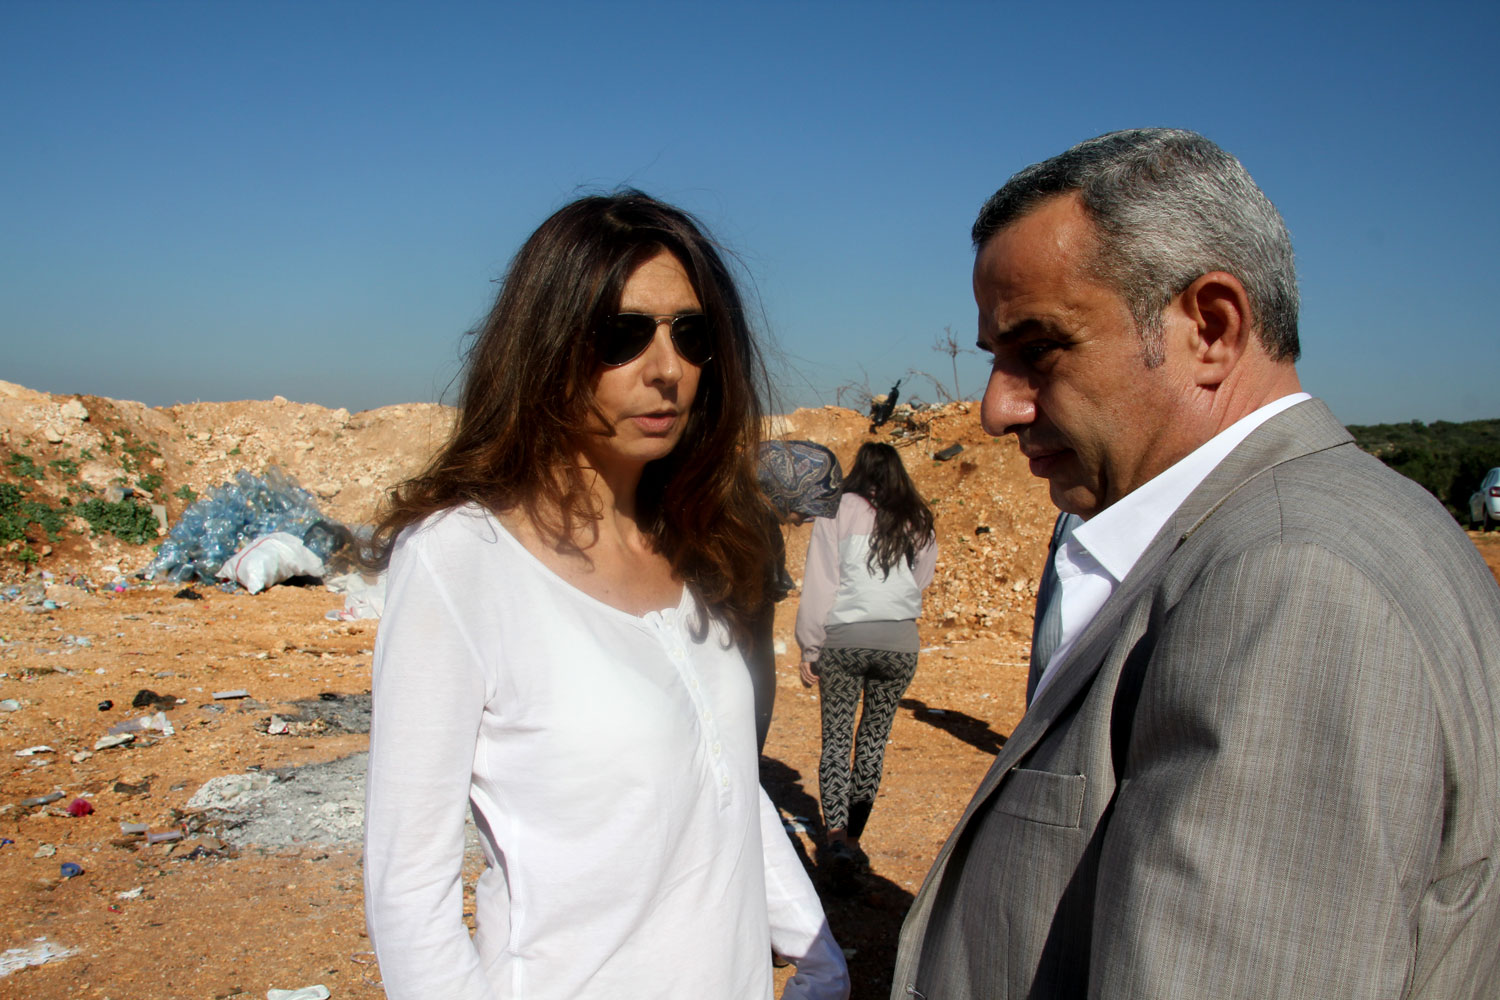 Rima et l’entrepreneur qui va acheter les déchets triés © Globe Reporters